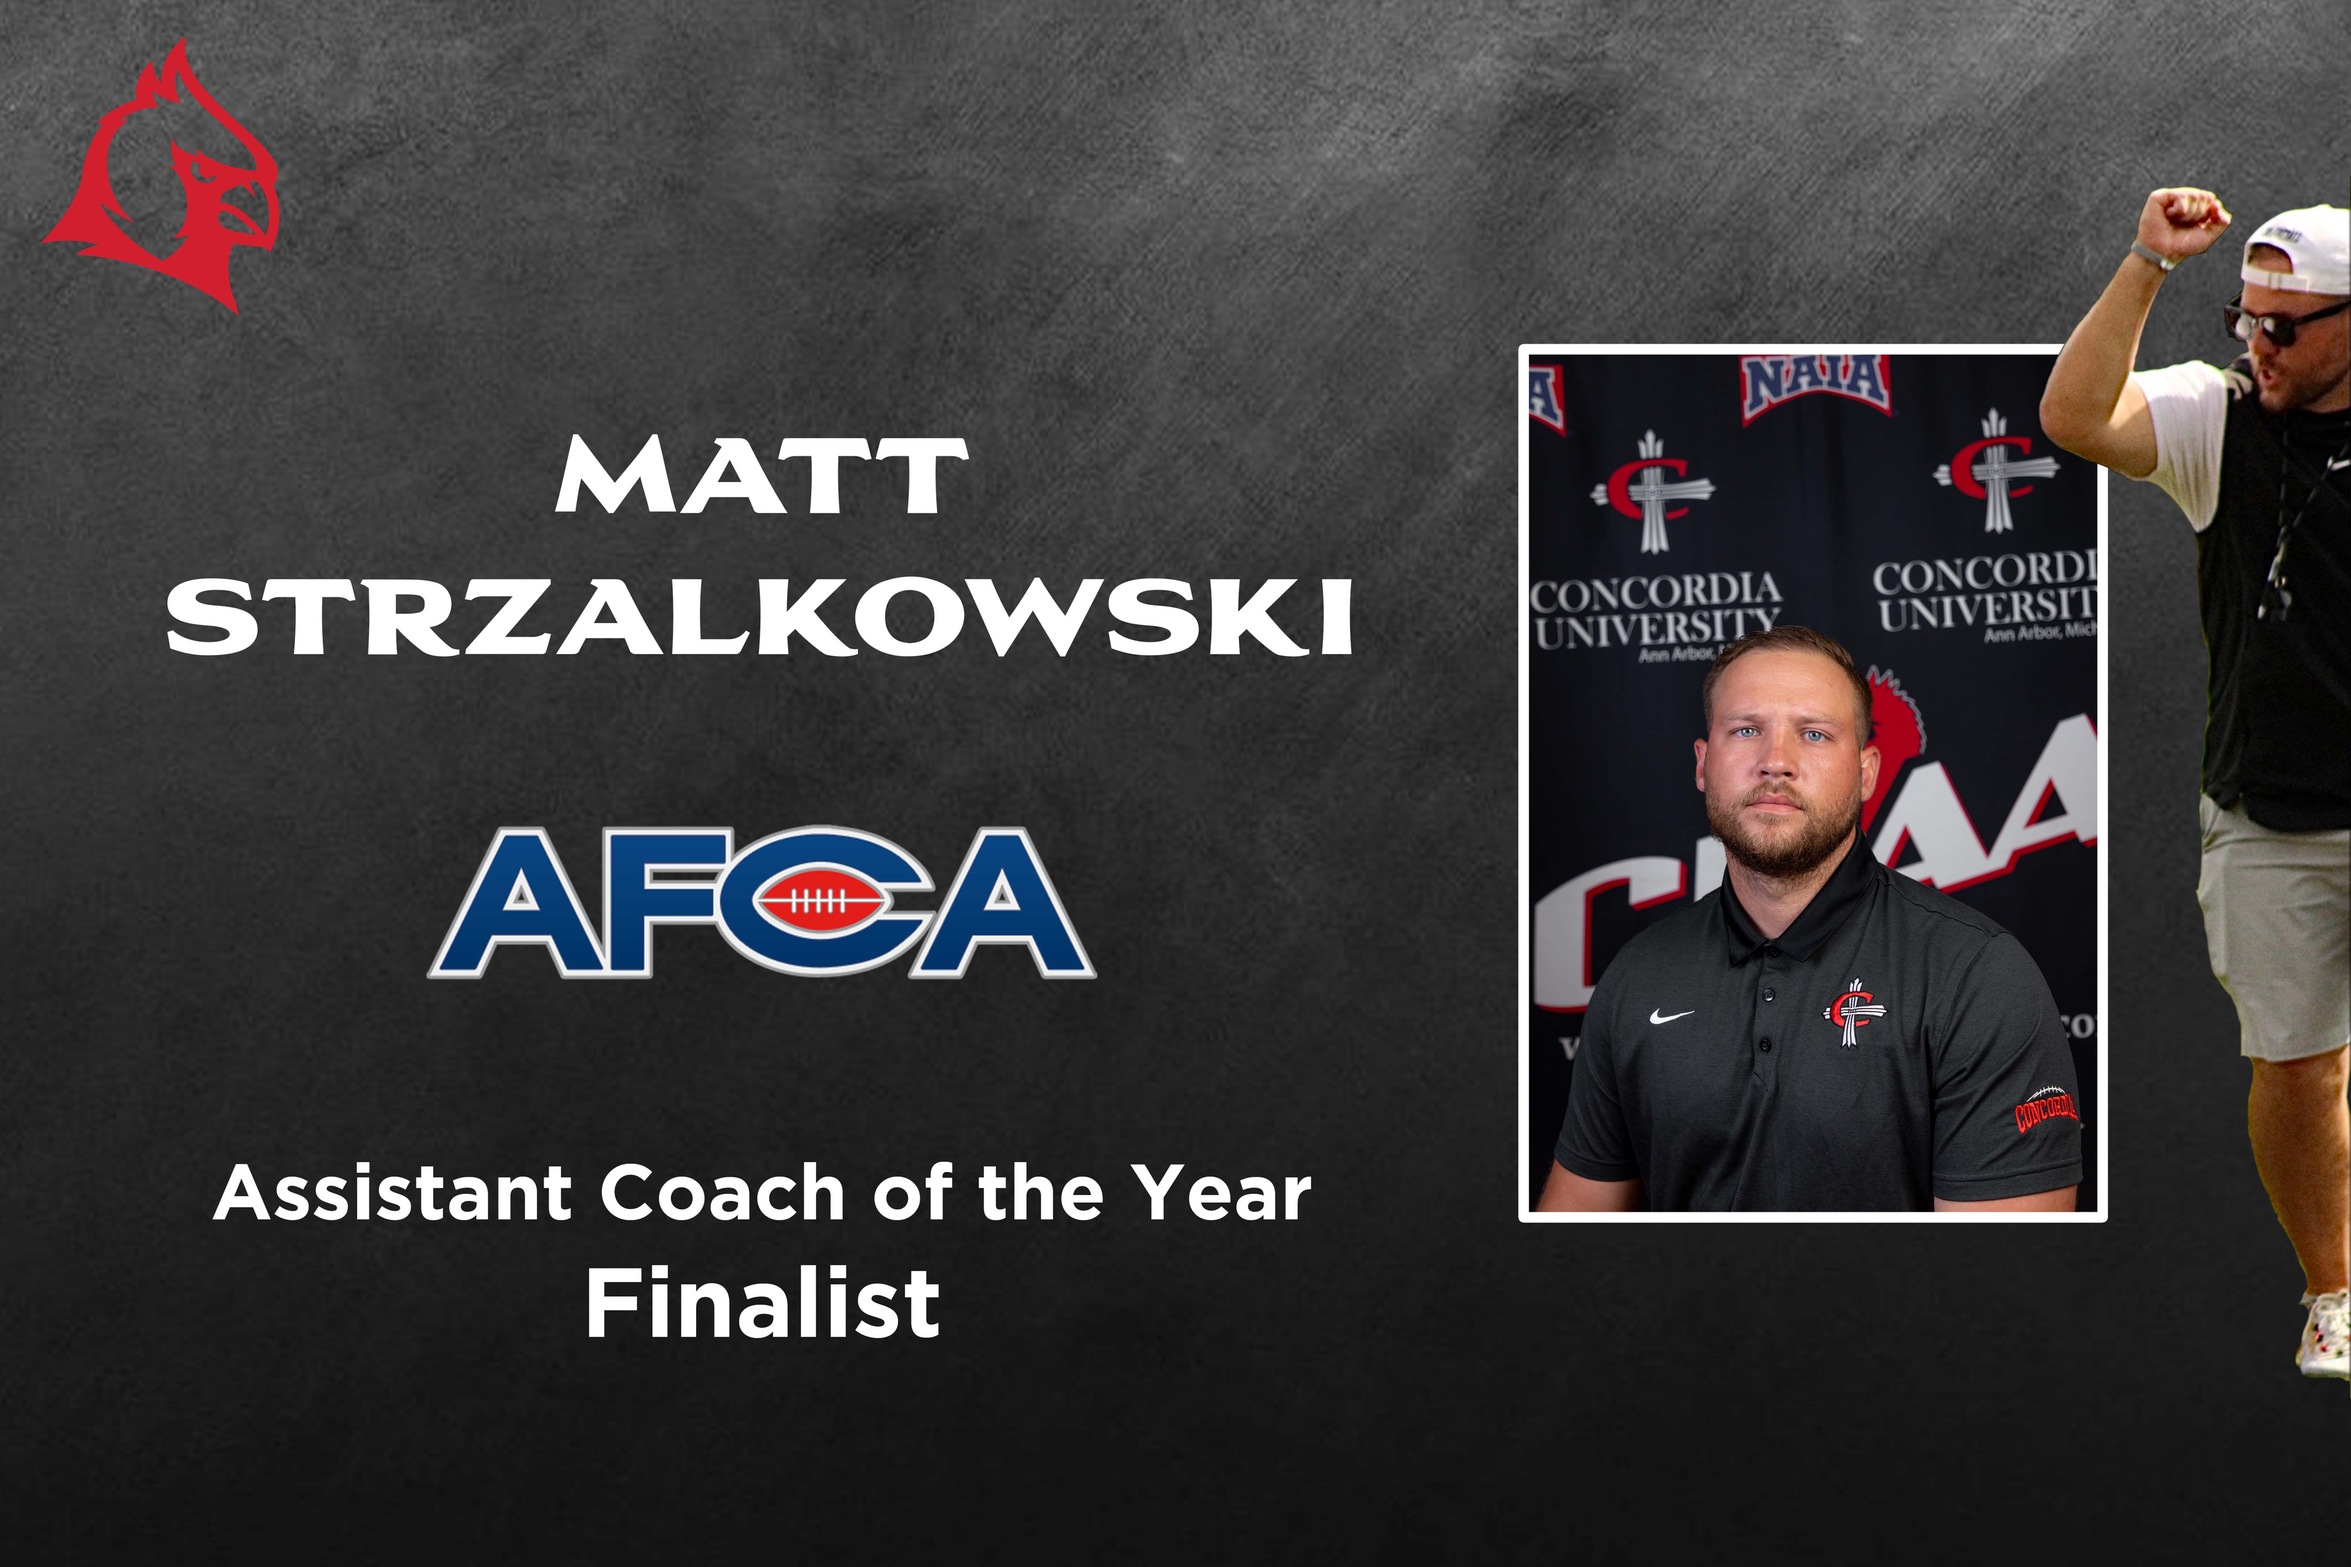 Matt Strzalkowski named an AFCA Assistant Coach of the Year Finalist